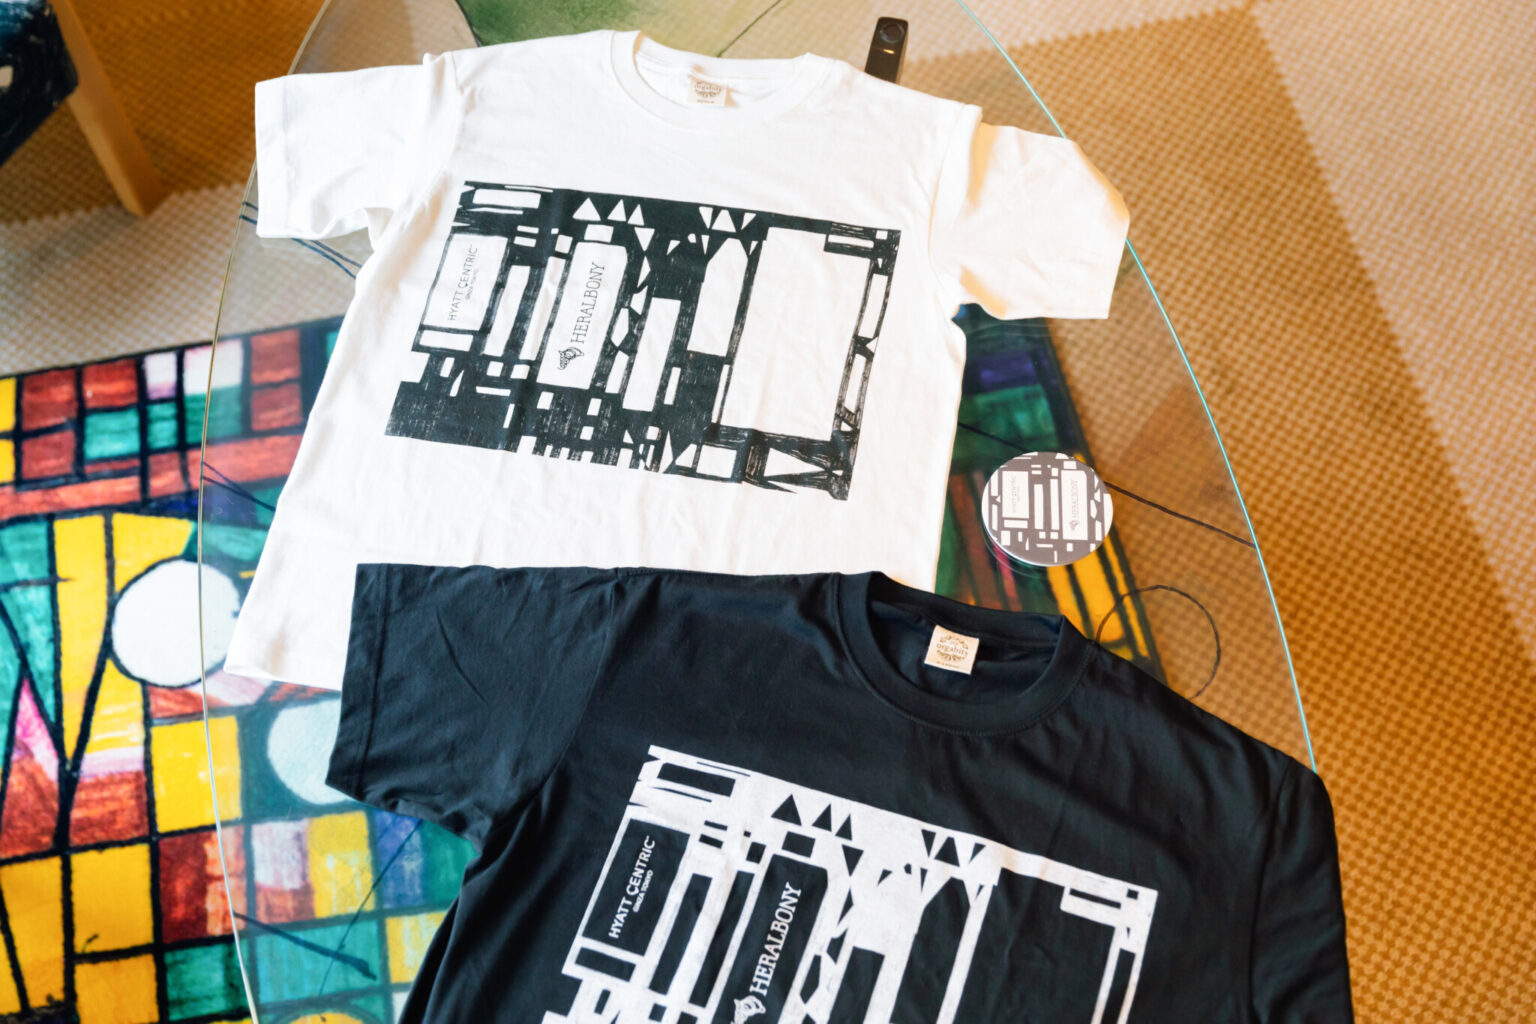 〈るんびにい美術館〉の八重樫季良さんの作品「（無題）（家）」が描かれたオリジナルTシャツとコースター。